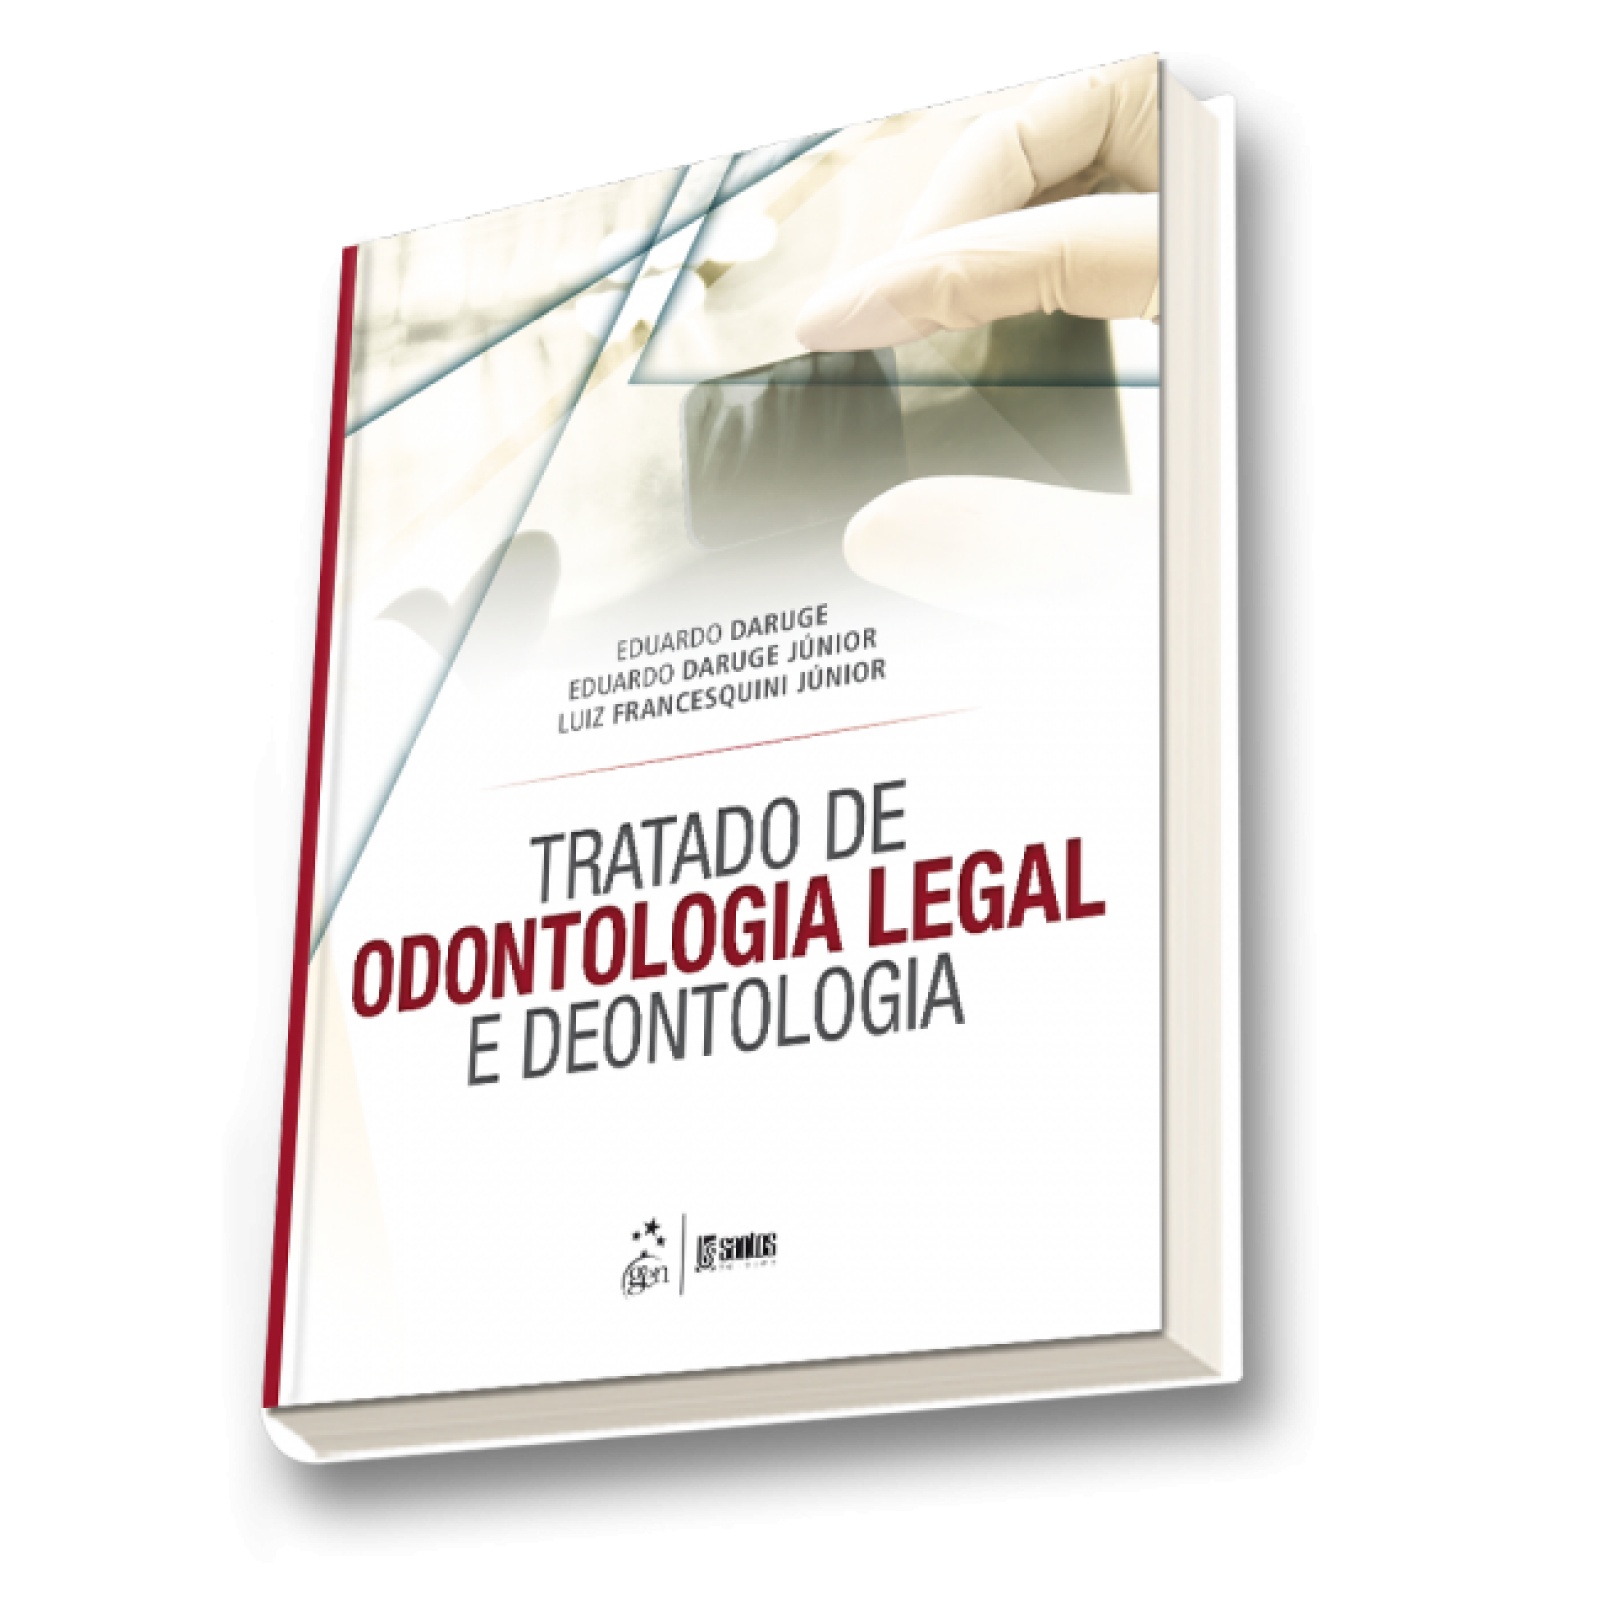 ODONTOLOGIA LEGAL- Prontuário odontológico parte 1 